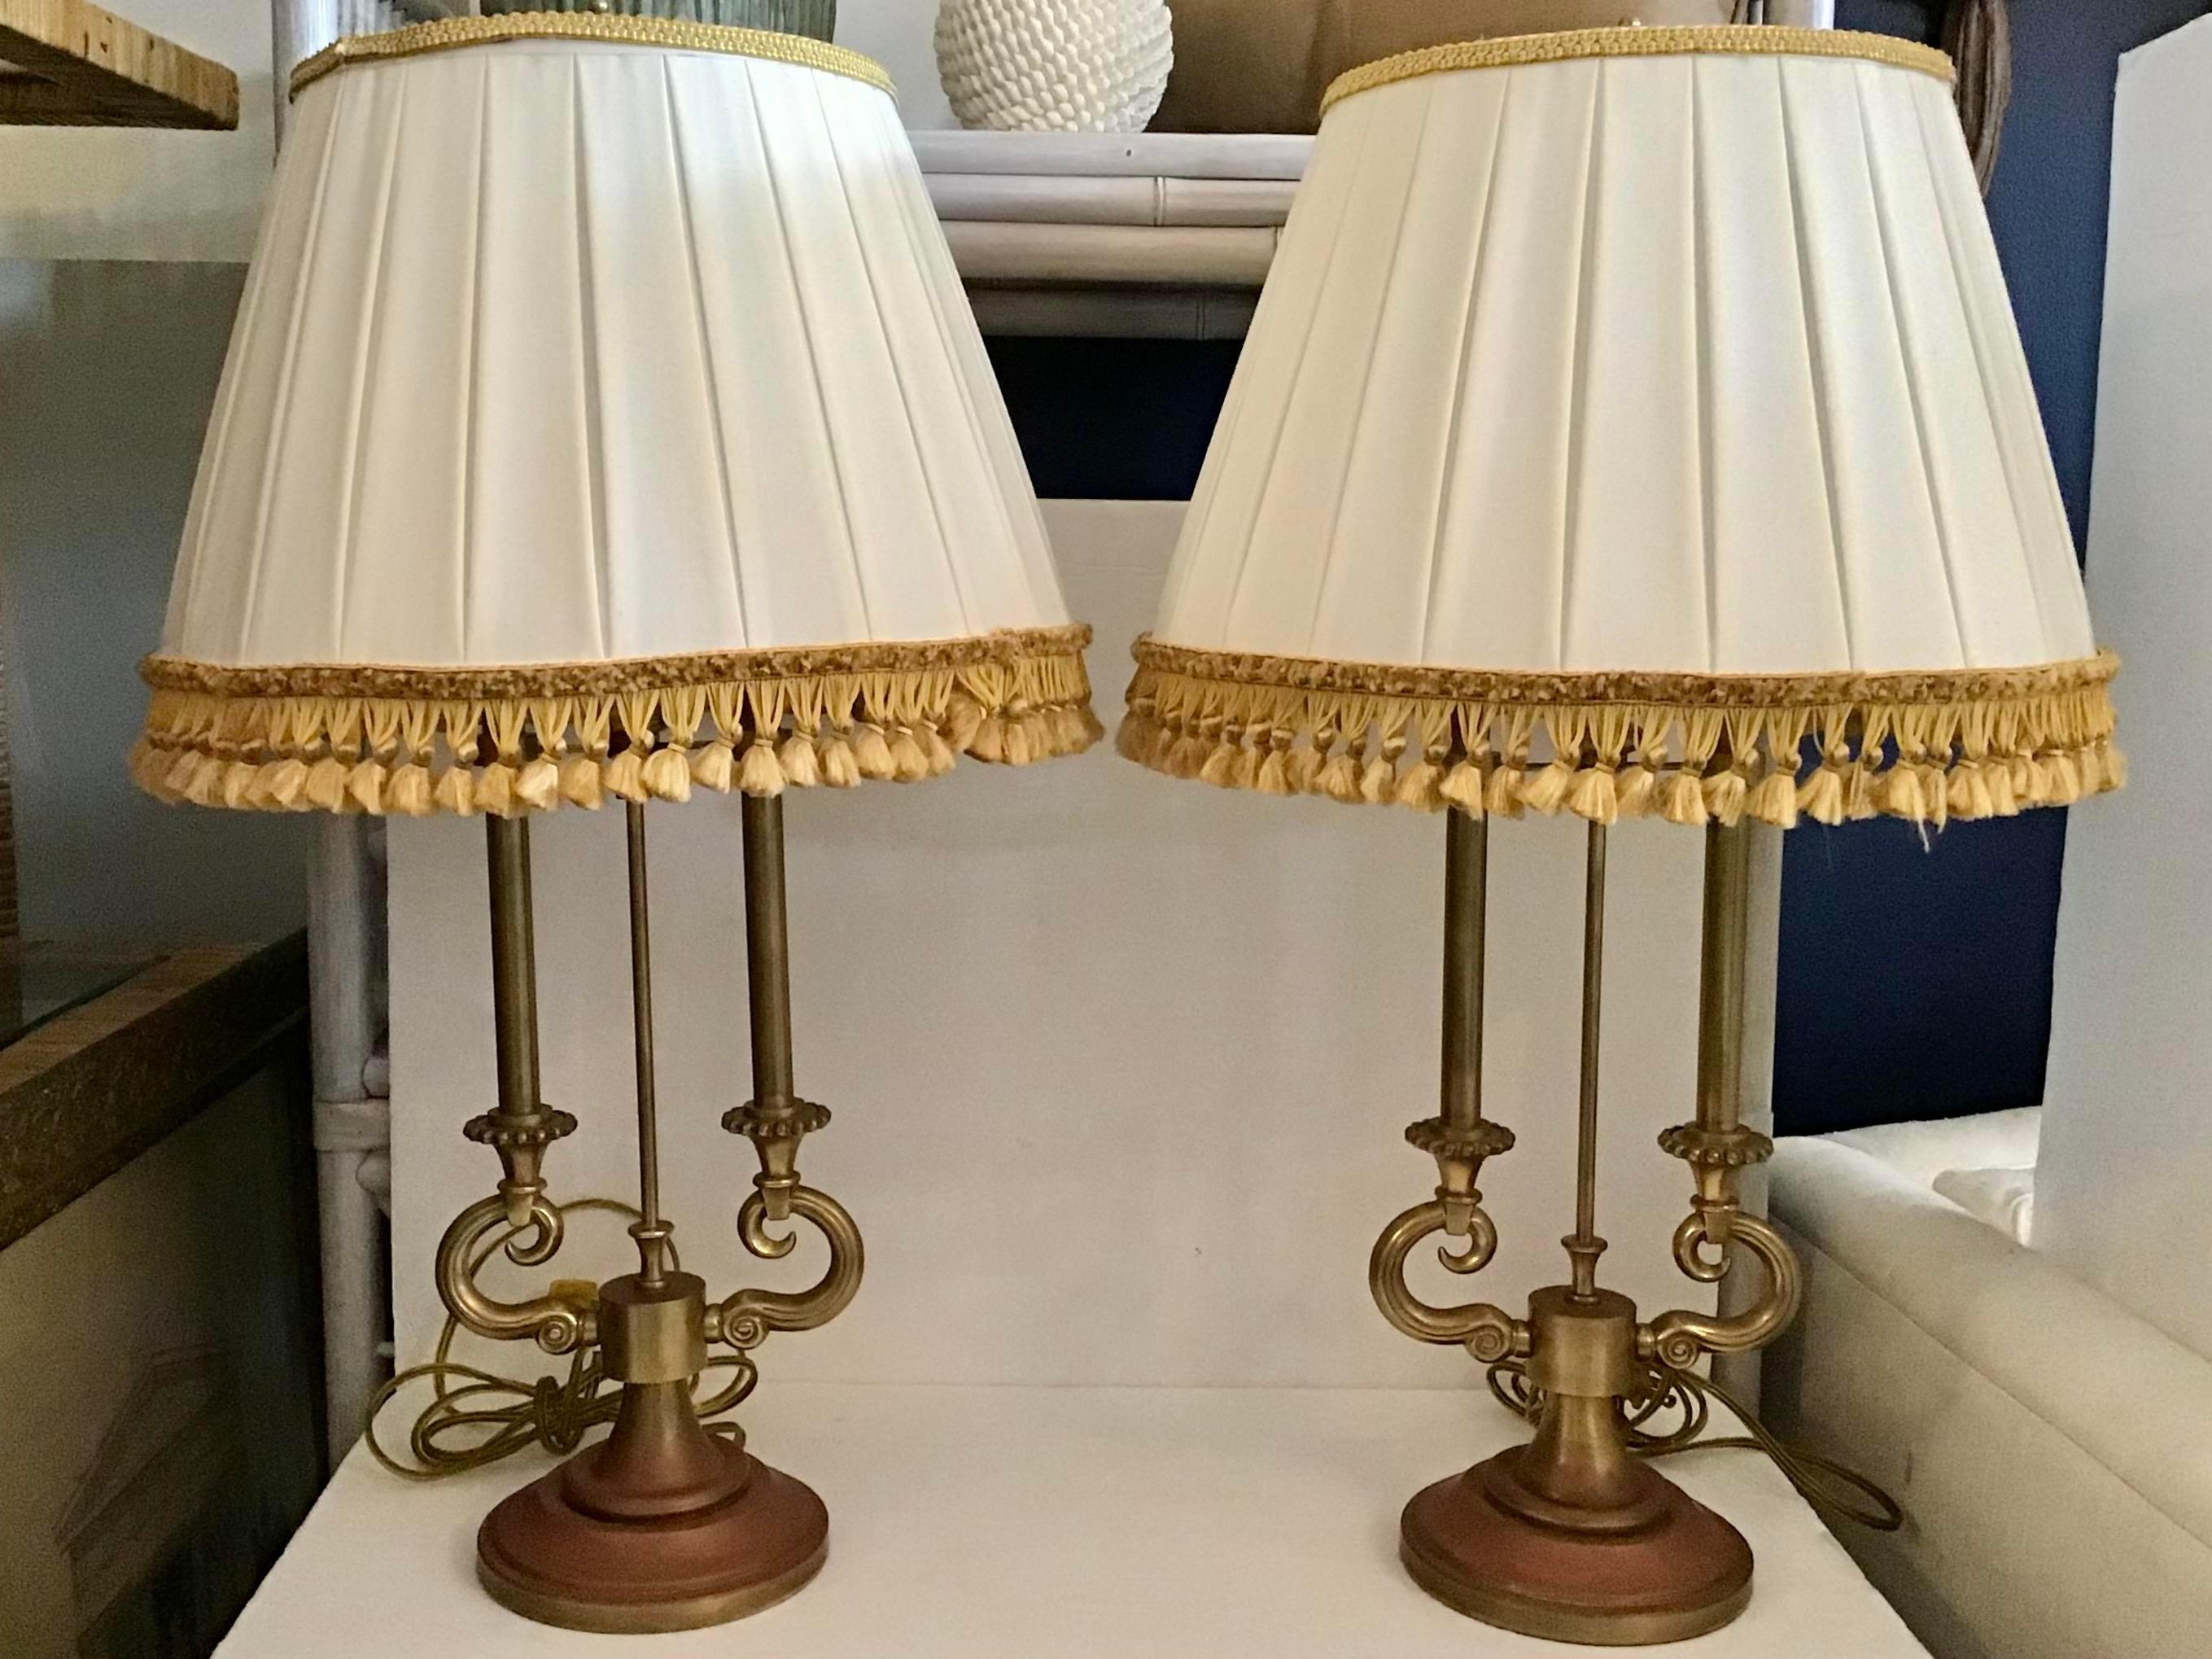 Originales Paar Stiffel-Tischlampen aus Messing mit Jansen-Schirmen mit Goldfransen. Diese wunderschönen originalen Stiffel-Lampen sind aus einem warmen, abgenutzten Messing. Beachten Sie die abgenutzte Alter auf den Basen addd echten Zorn auf Ihre